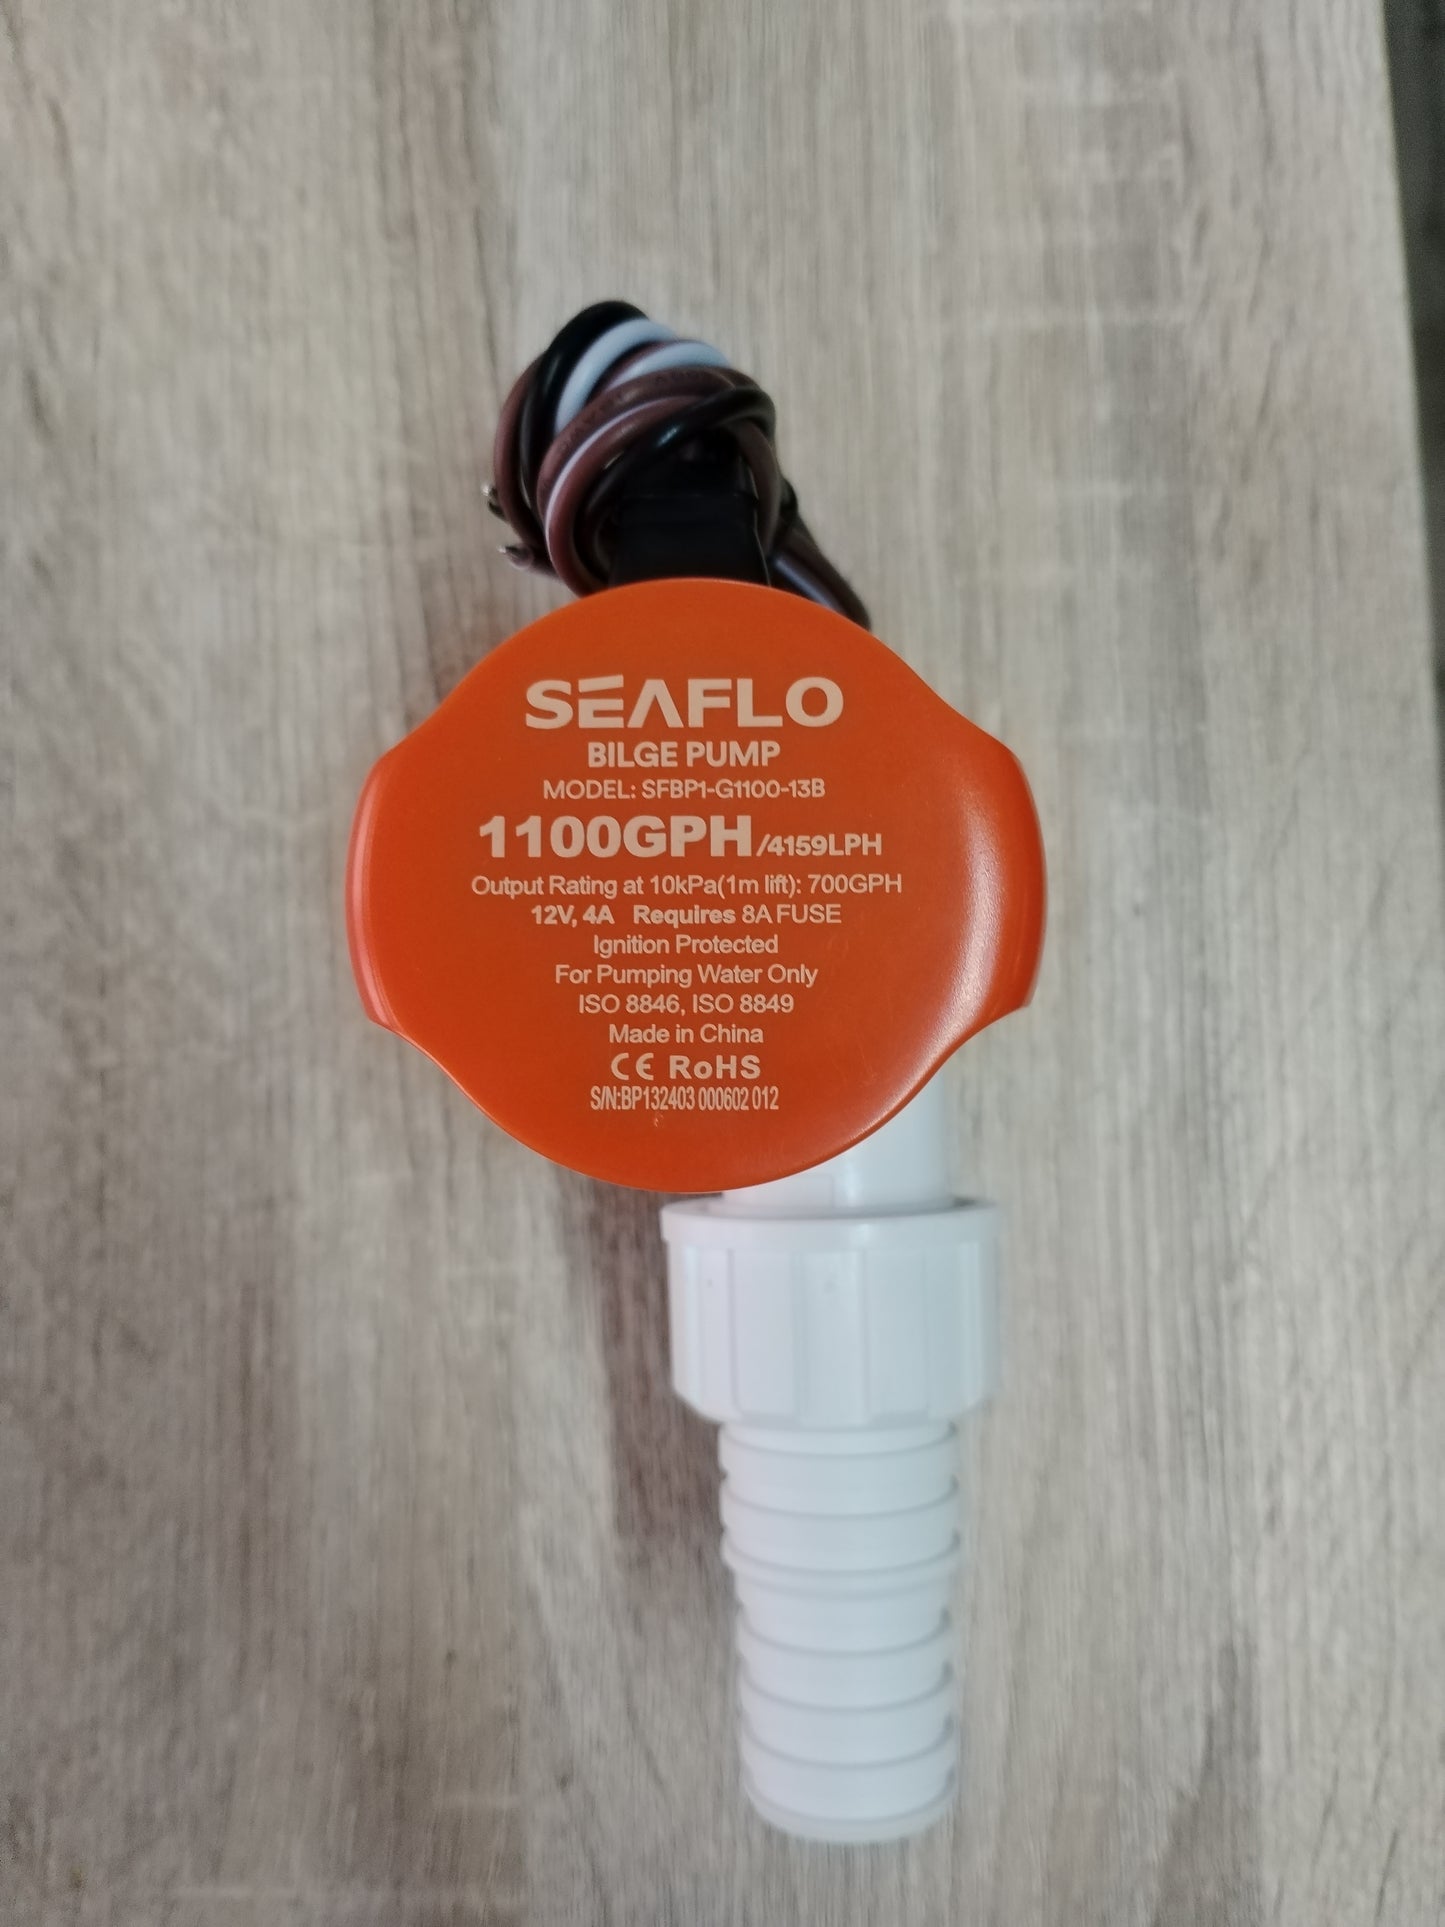 Seaflo Auto Bilge Pump (1100GPH)